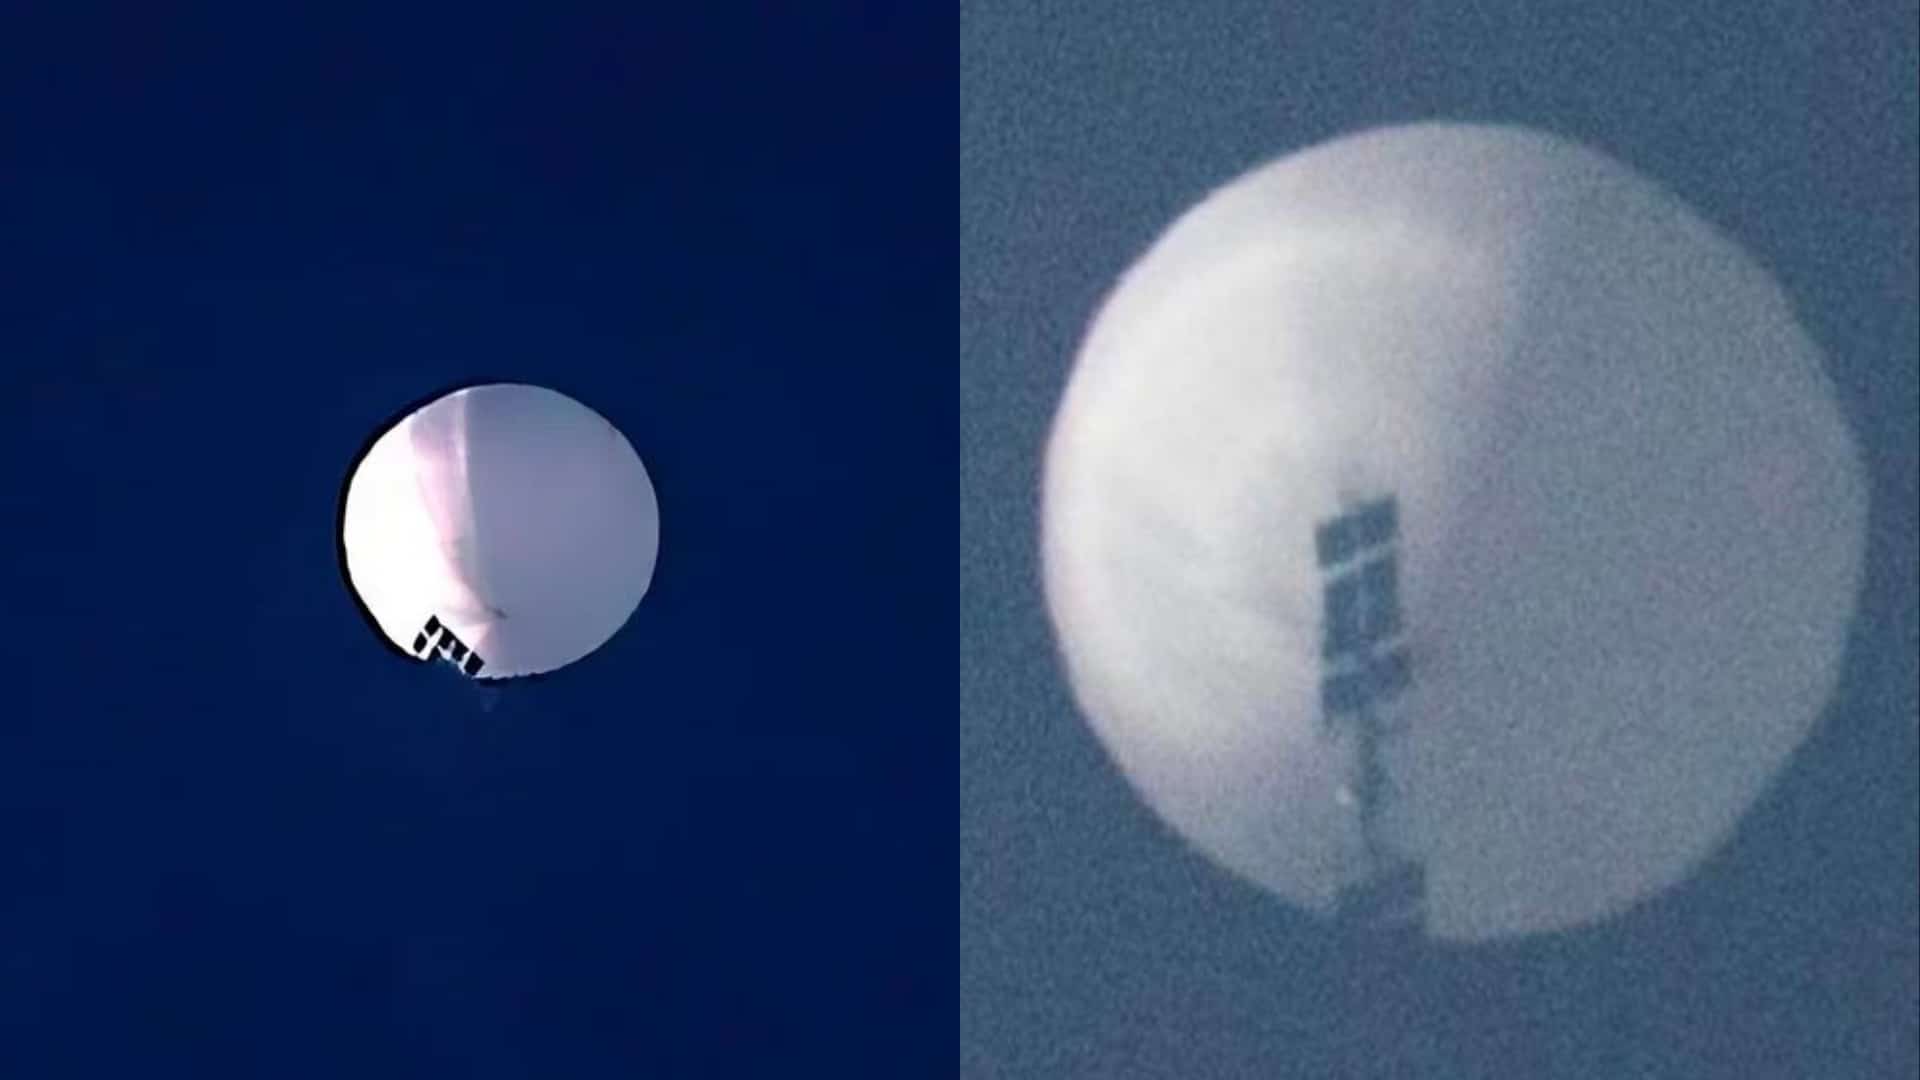 Pallone spia, Pechino si scusa con Washington: “È un dirigibile meteo”